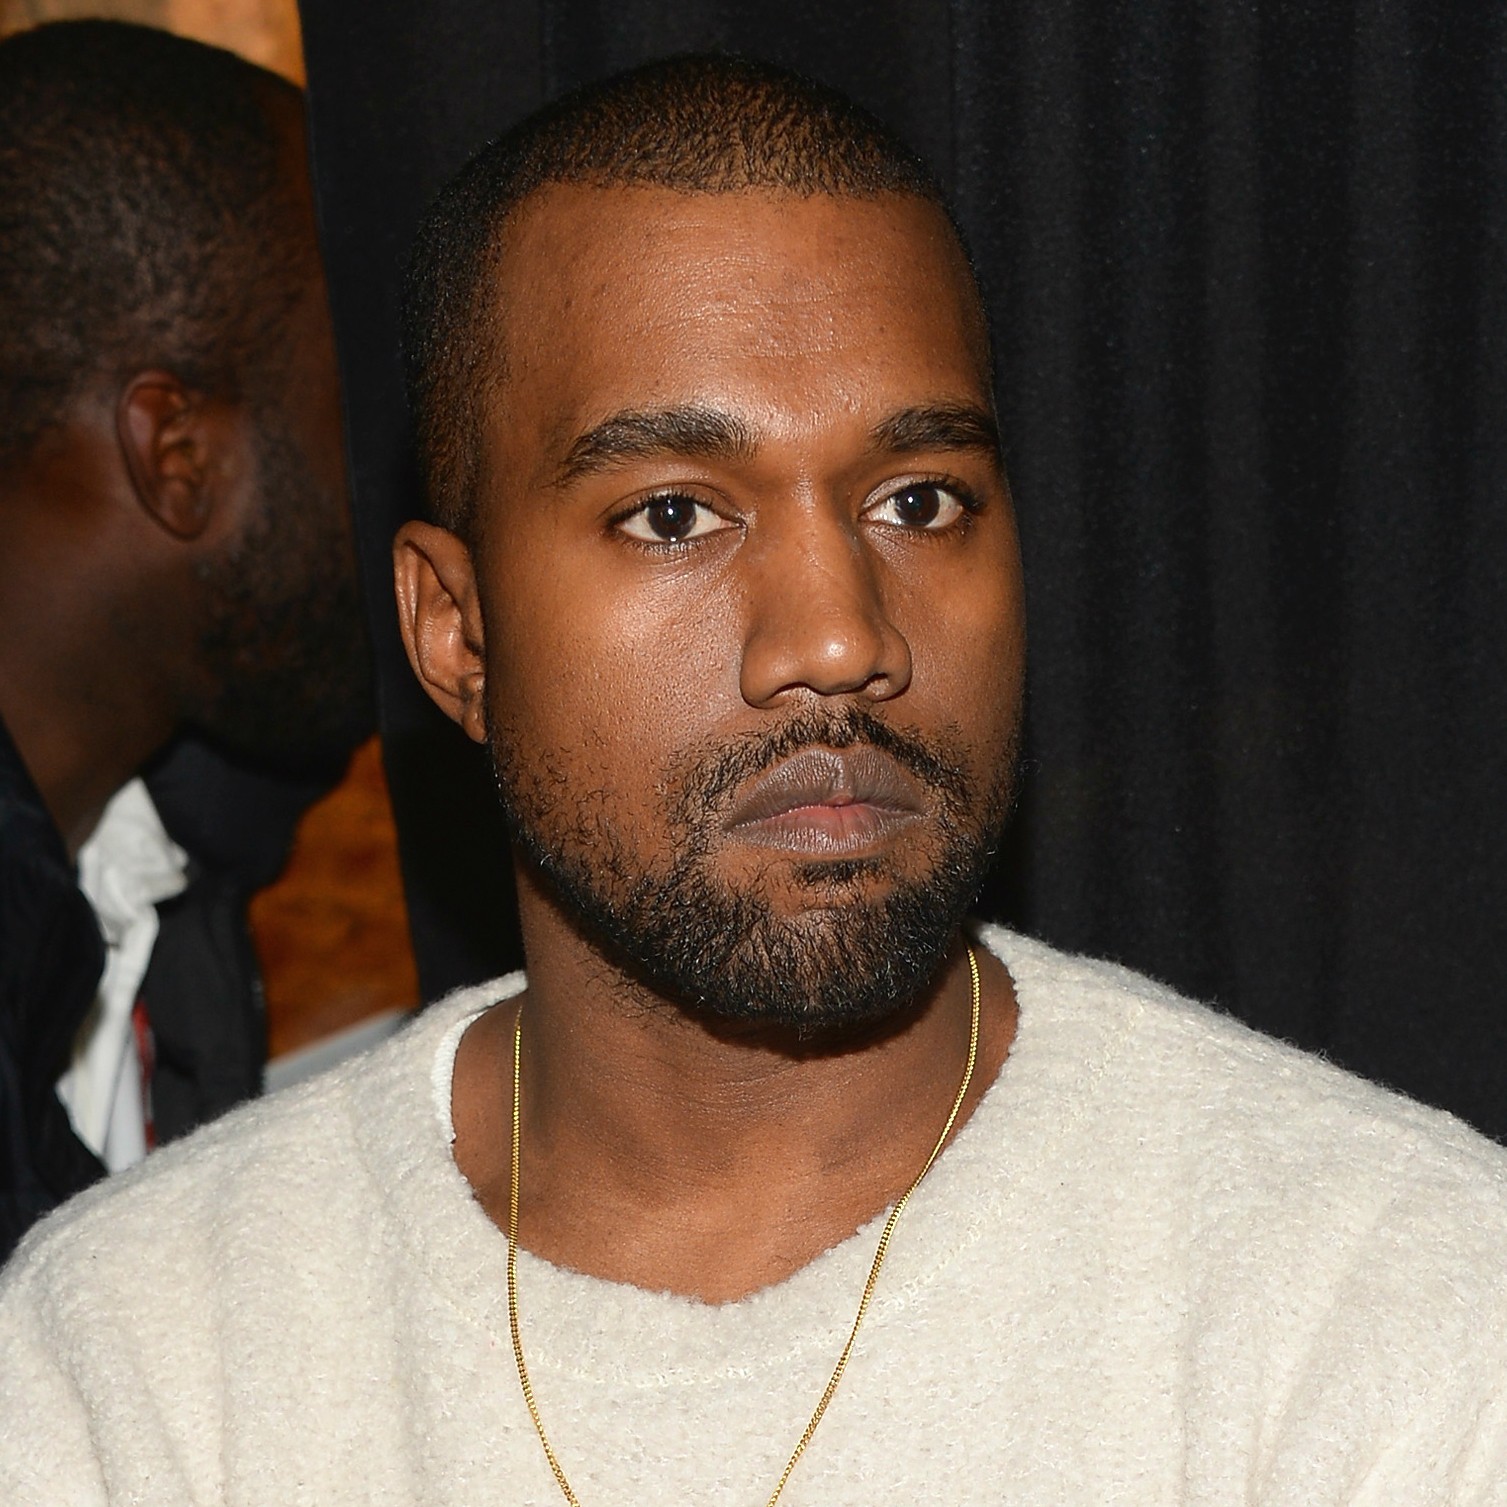 O rapper Kanye West sofreu um terrível acidente de carro em 2002, teve de passar por uma cirurgia reconstrutiva e sua mandíbula foi forçosamente fechada por um tempo para que se recuperasse. Ele escreveu uma música a respeito, 'Through the Wire'. (Foto: Getty Images)